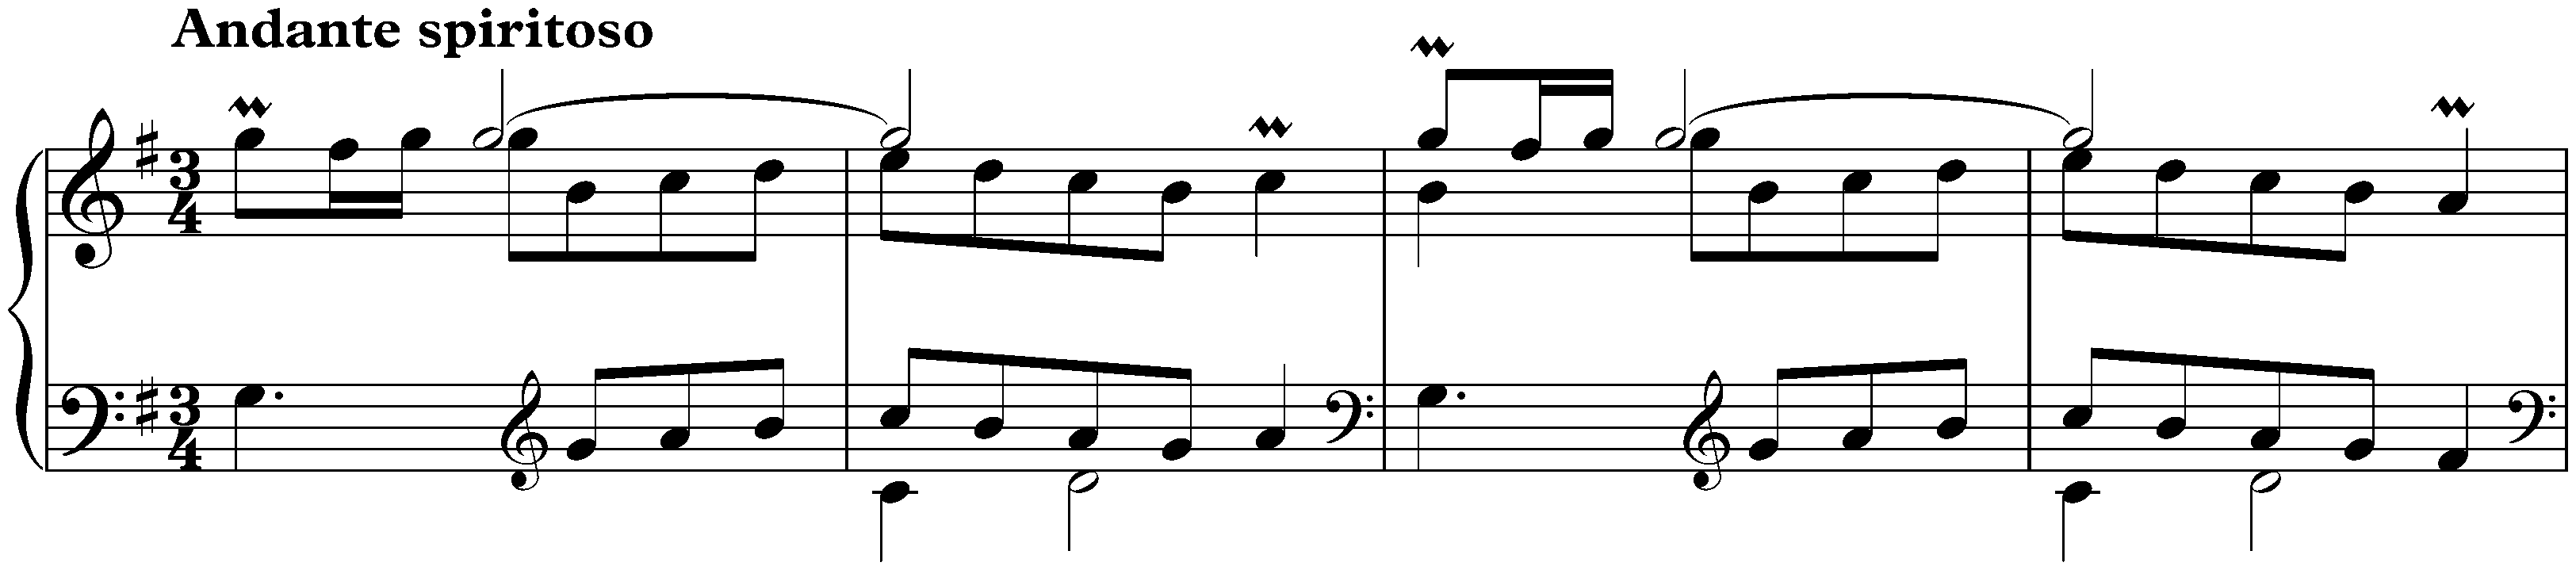 Sonata in G major, K. 454